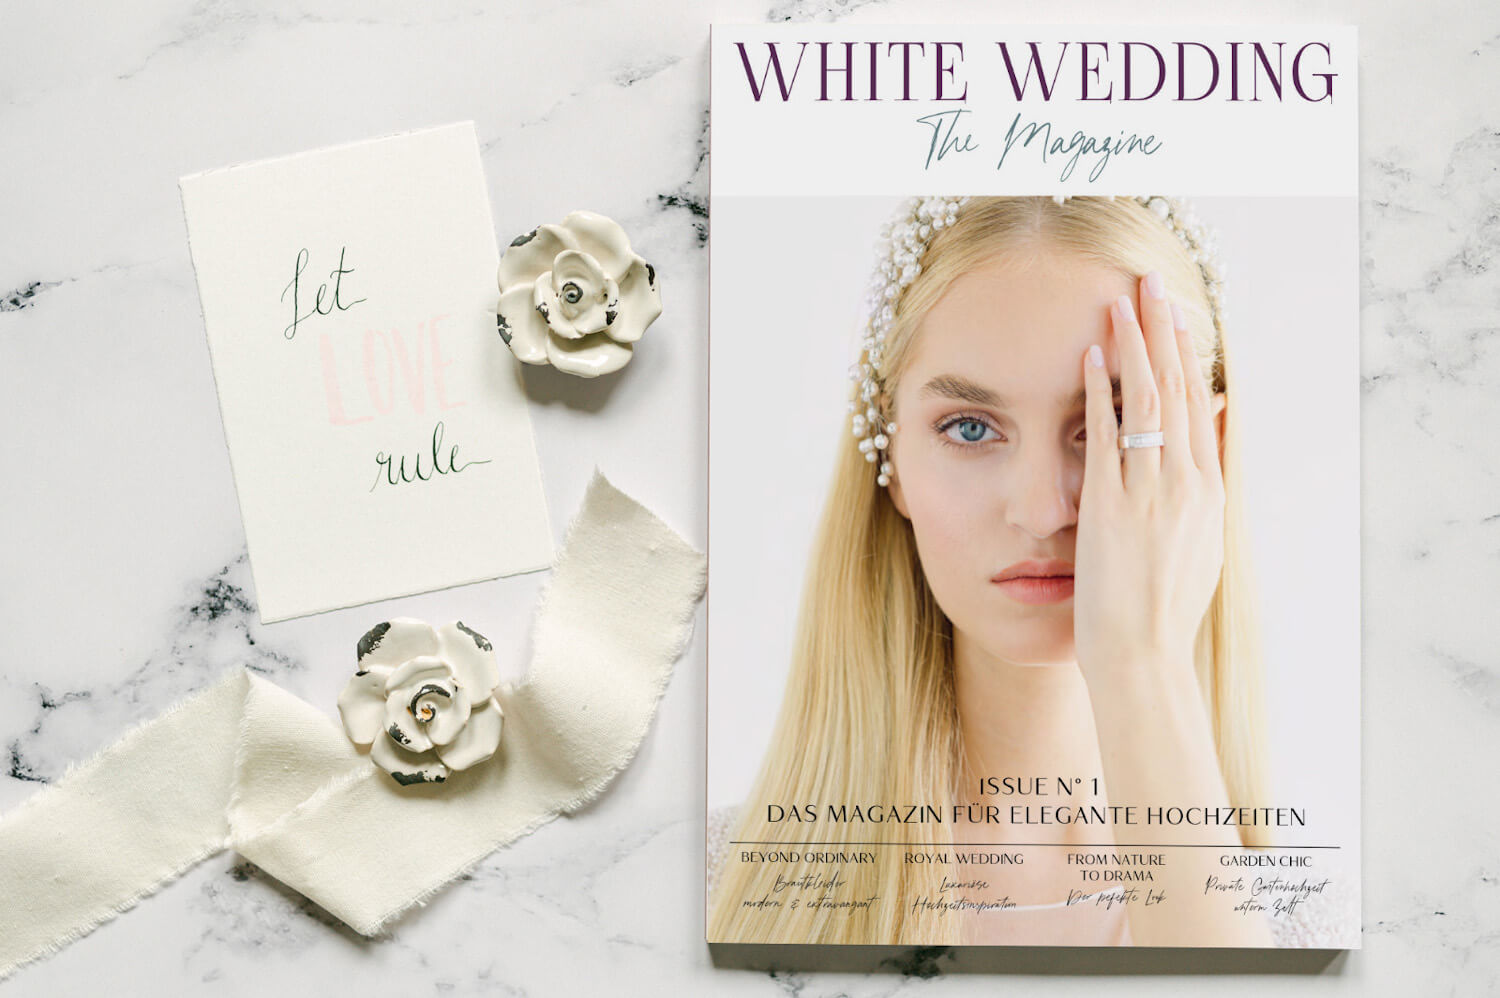 WHITE WEDDING – The Magazine: Inspiration für eure zeitlose Hochzeitsfeier